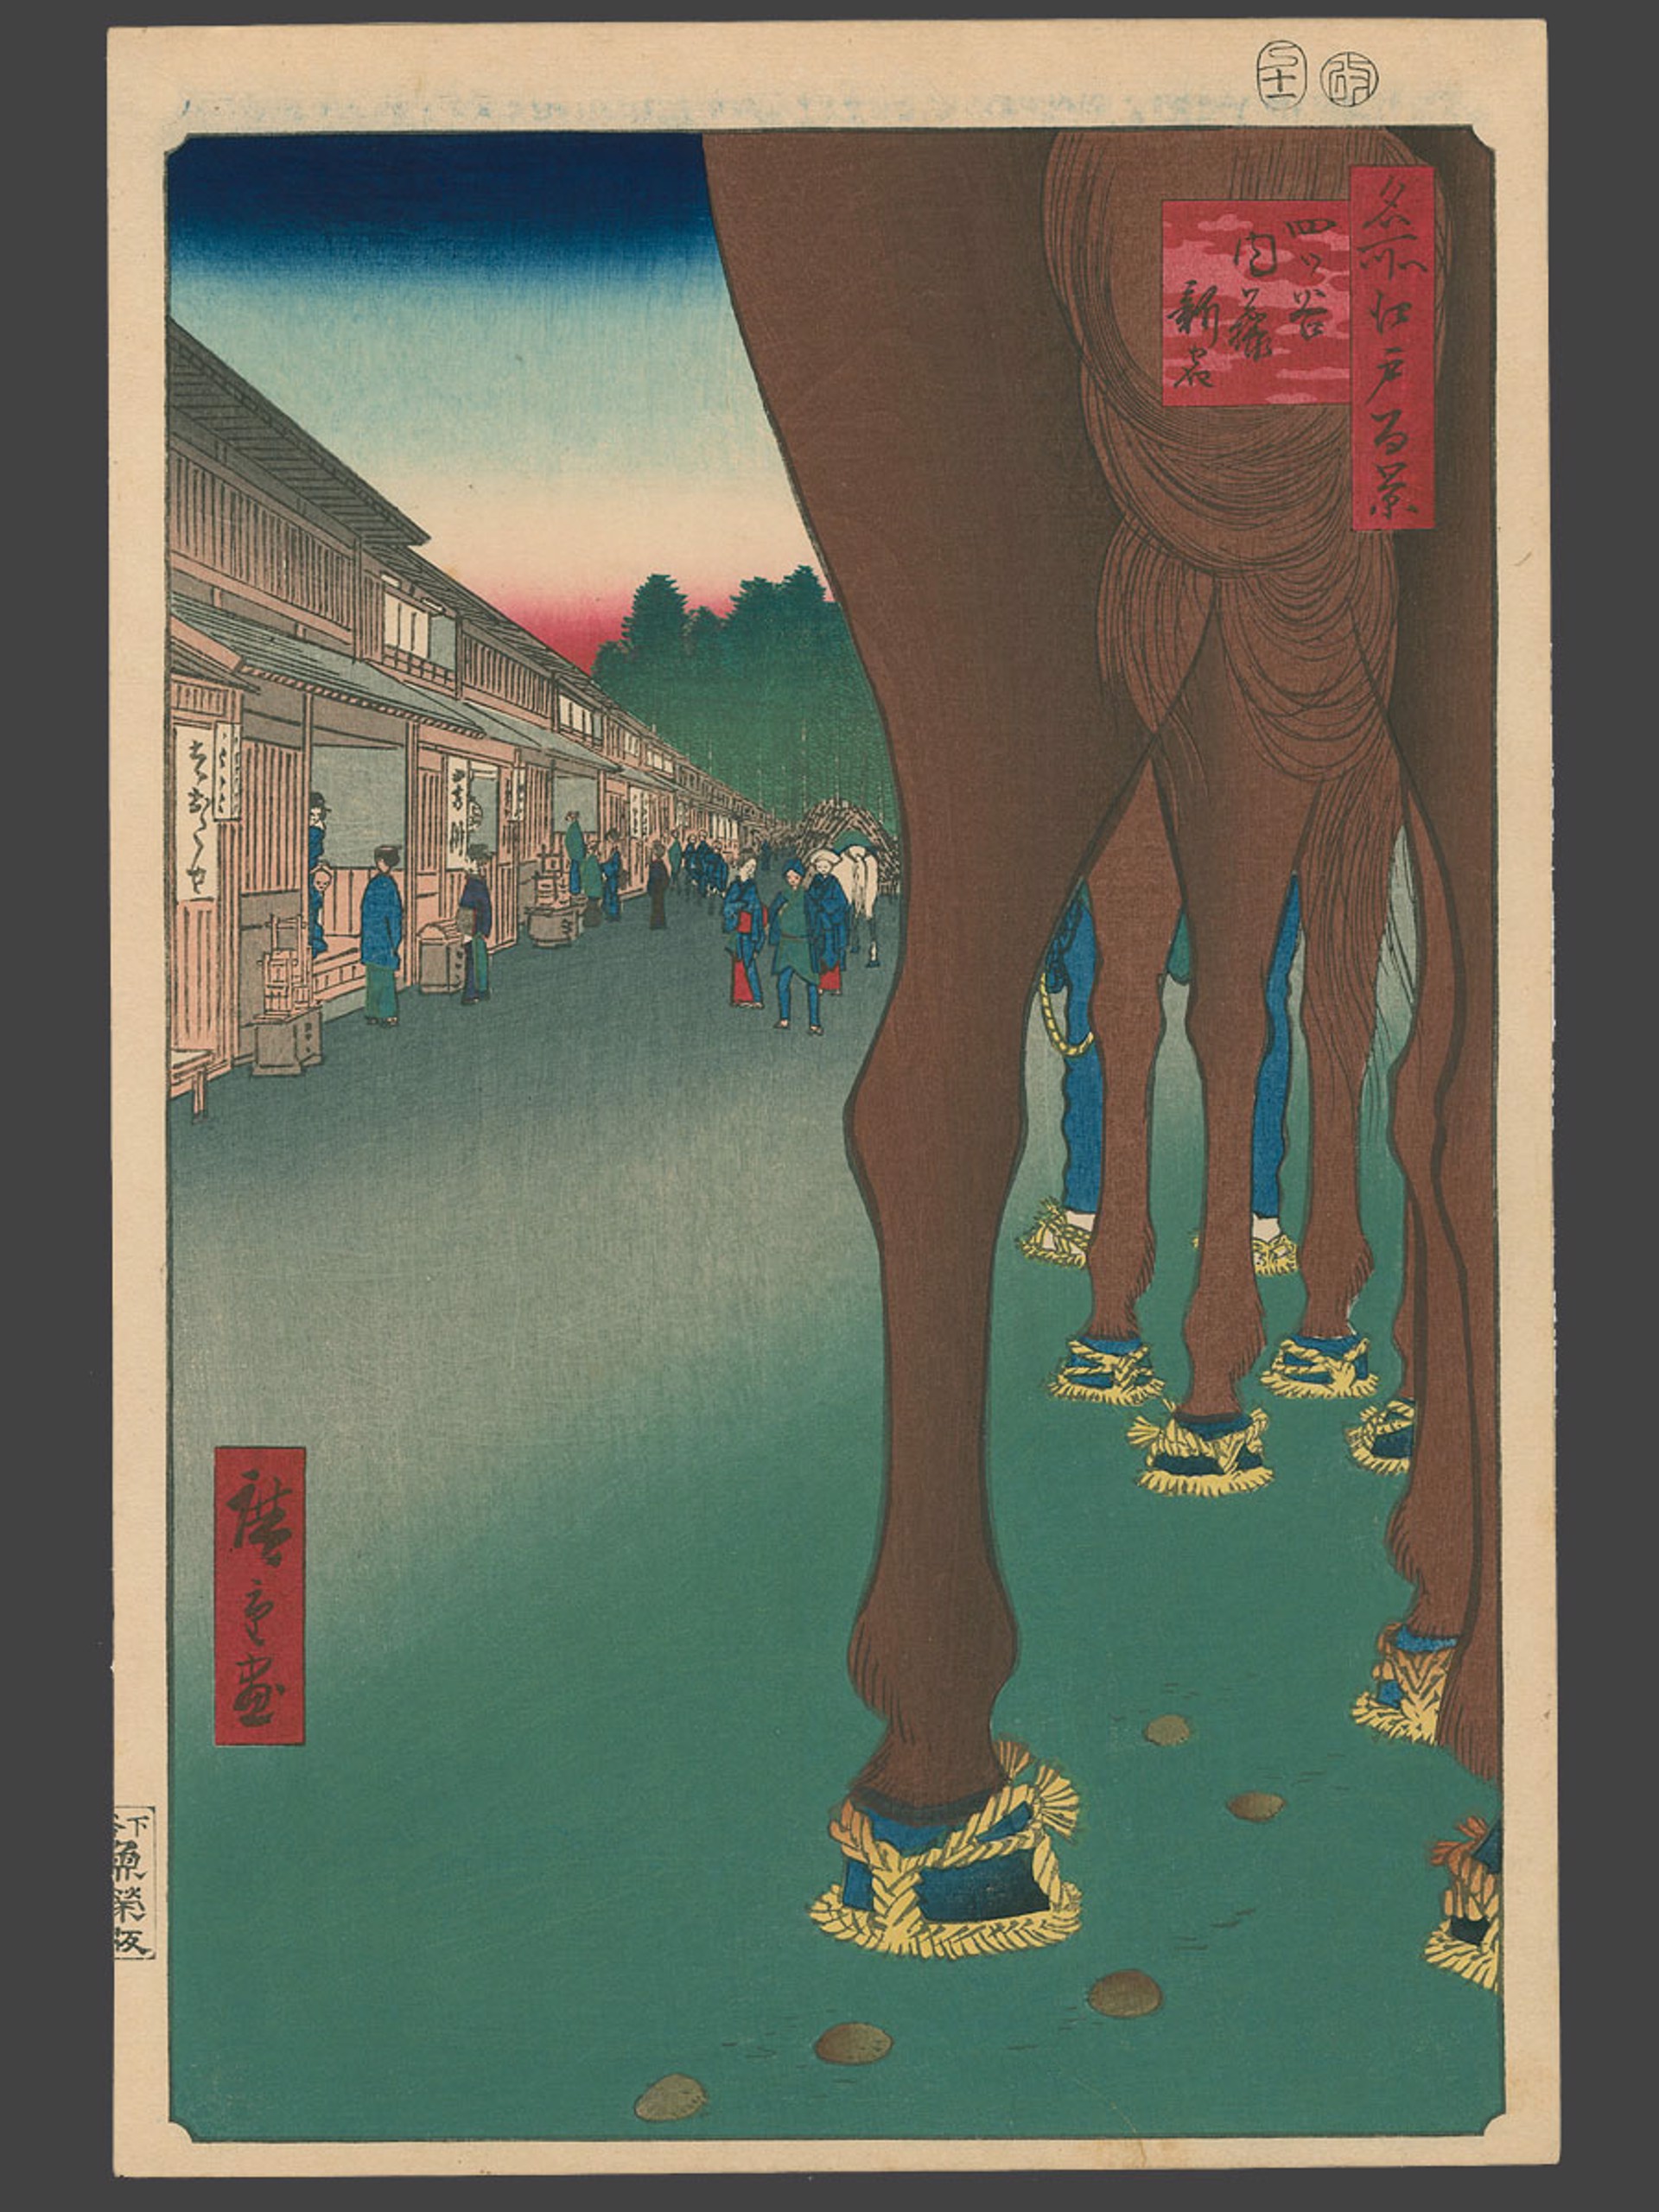 #86 Yotsya and Naito Shinjuku Areas 100 Views of Edo by Hiroshige